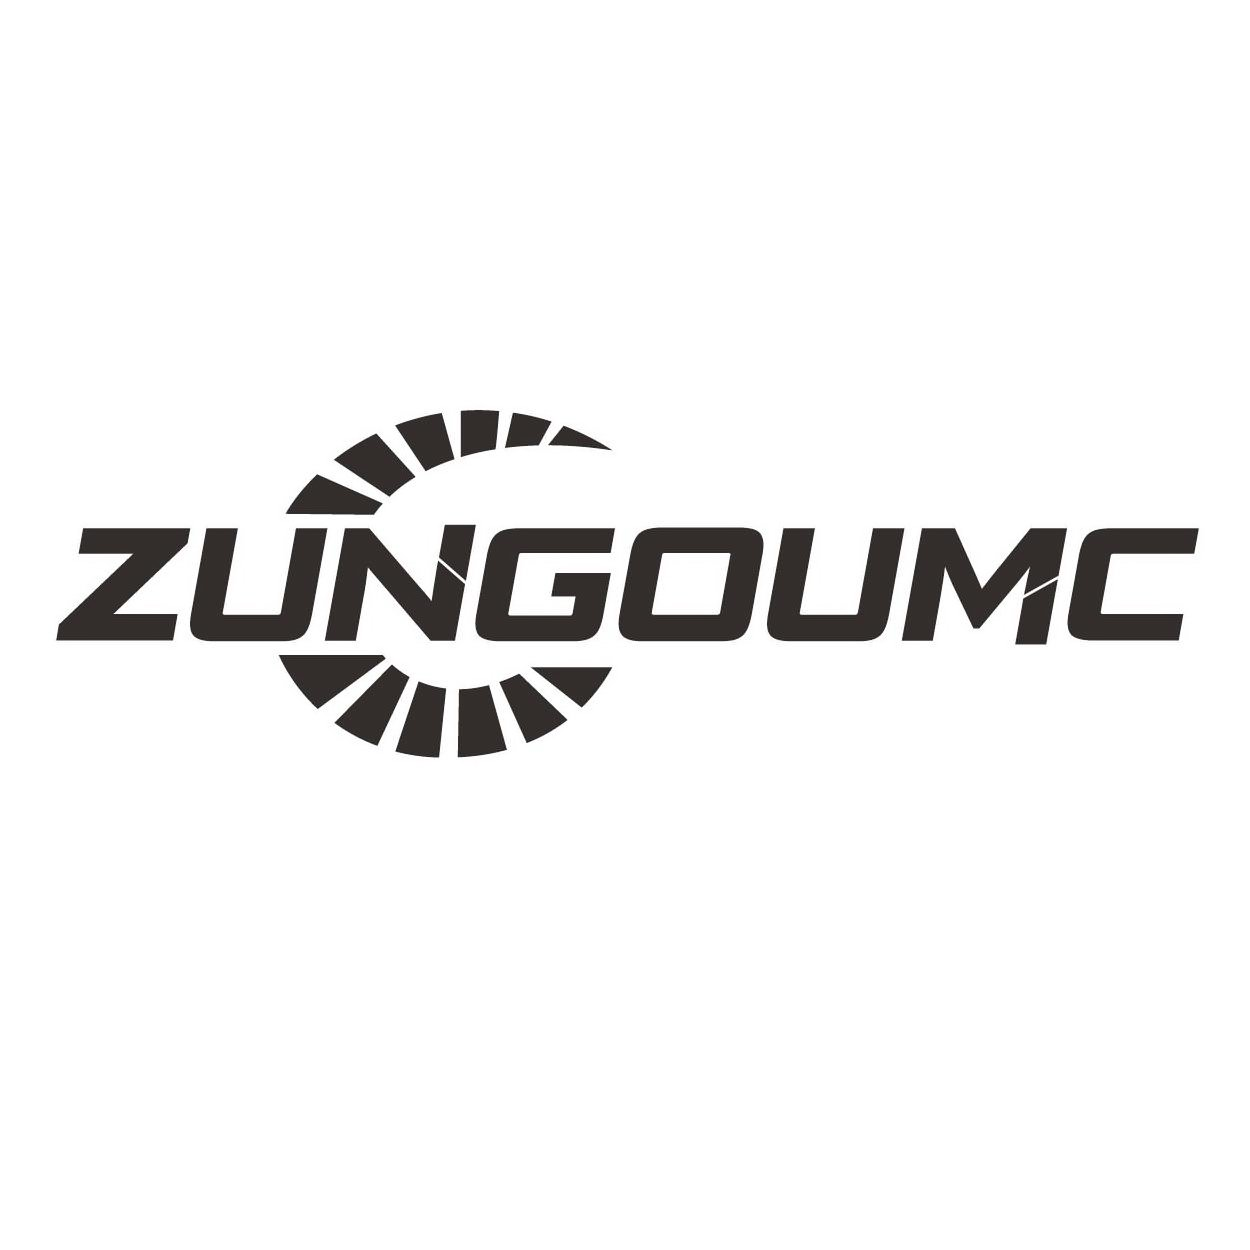  ZUNGOUMC